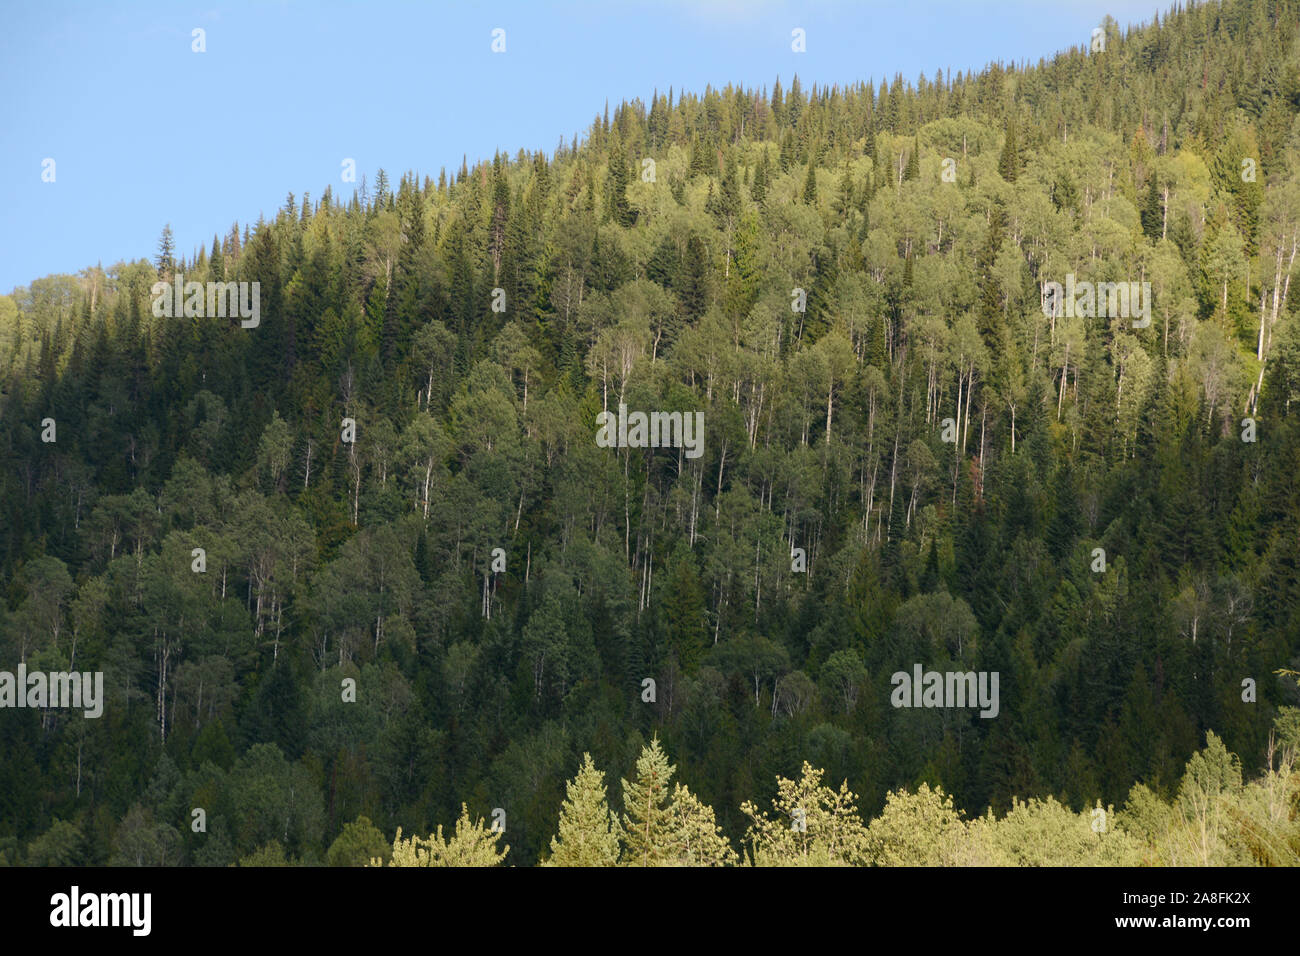 Eine gemischte Laub- und Nadelholz gemäßigten Regenwald in den Selkirk Mountains in den Kootenays Regionen im Südosten von British Columbia, Kanada. Stockfoto